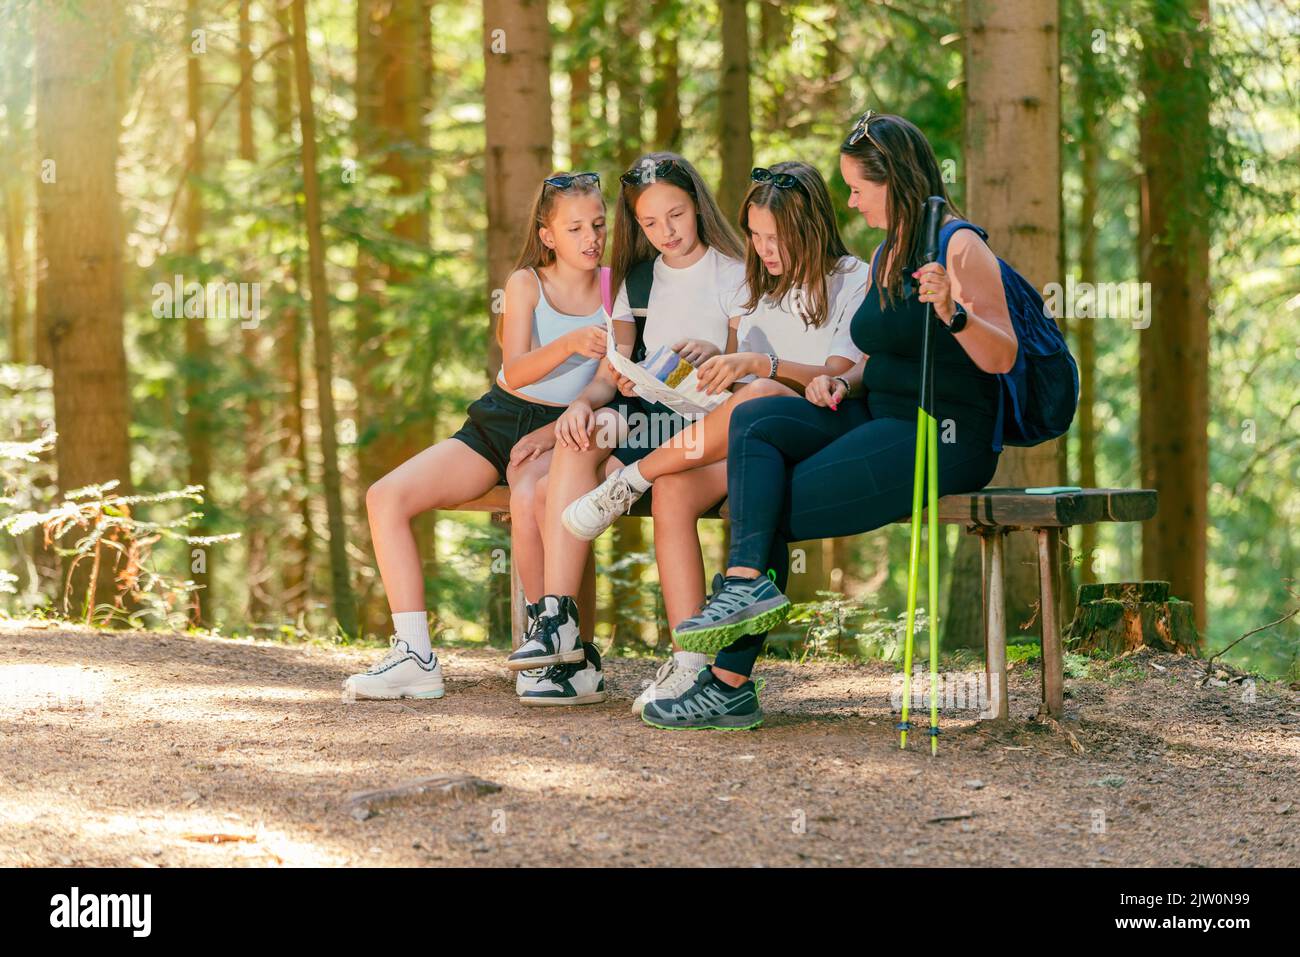 Las senderistas se sientan en un banco de madera en un camino forestal y leer un mapa de rutas de senderismo Foto de stock